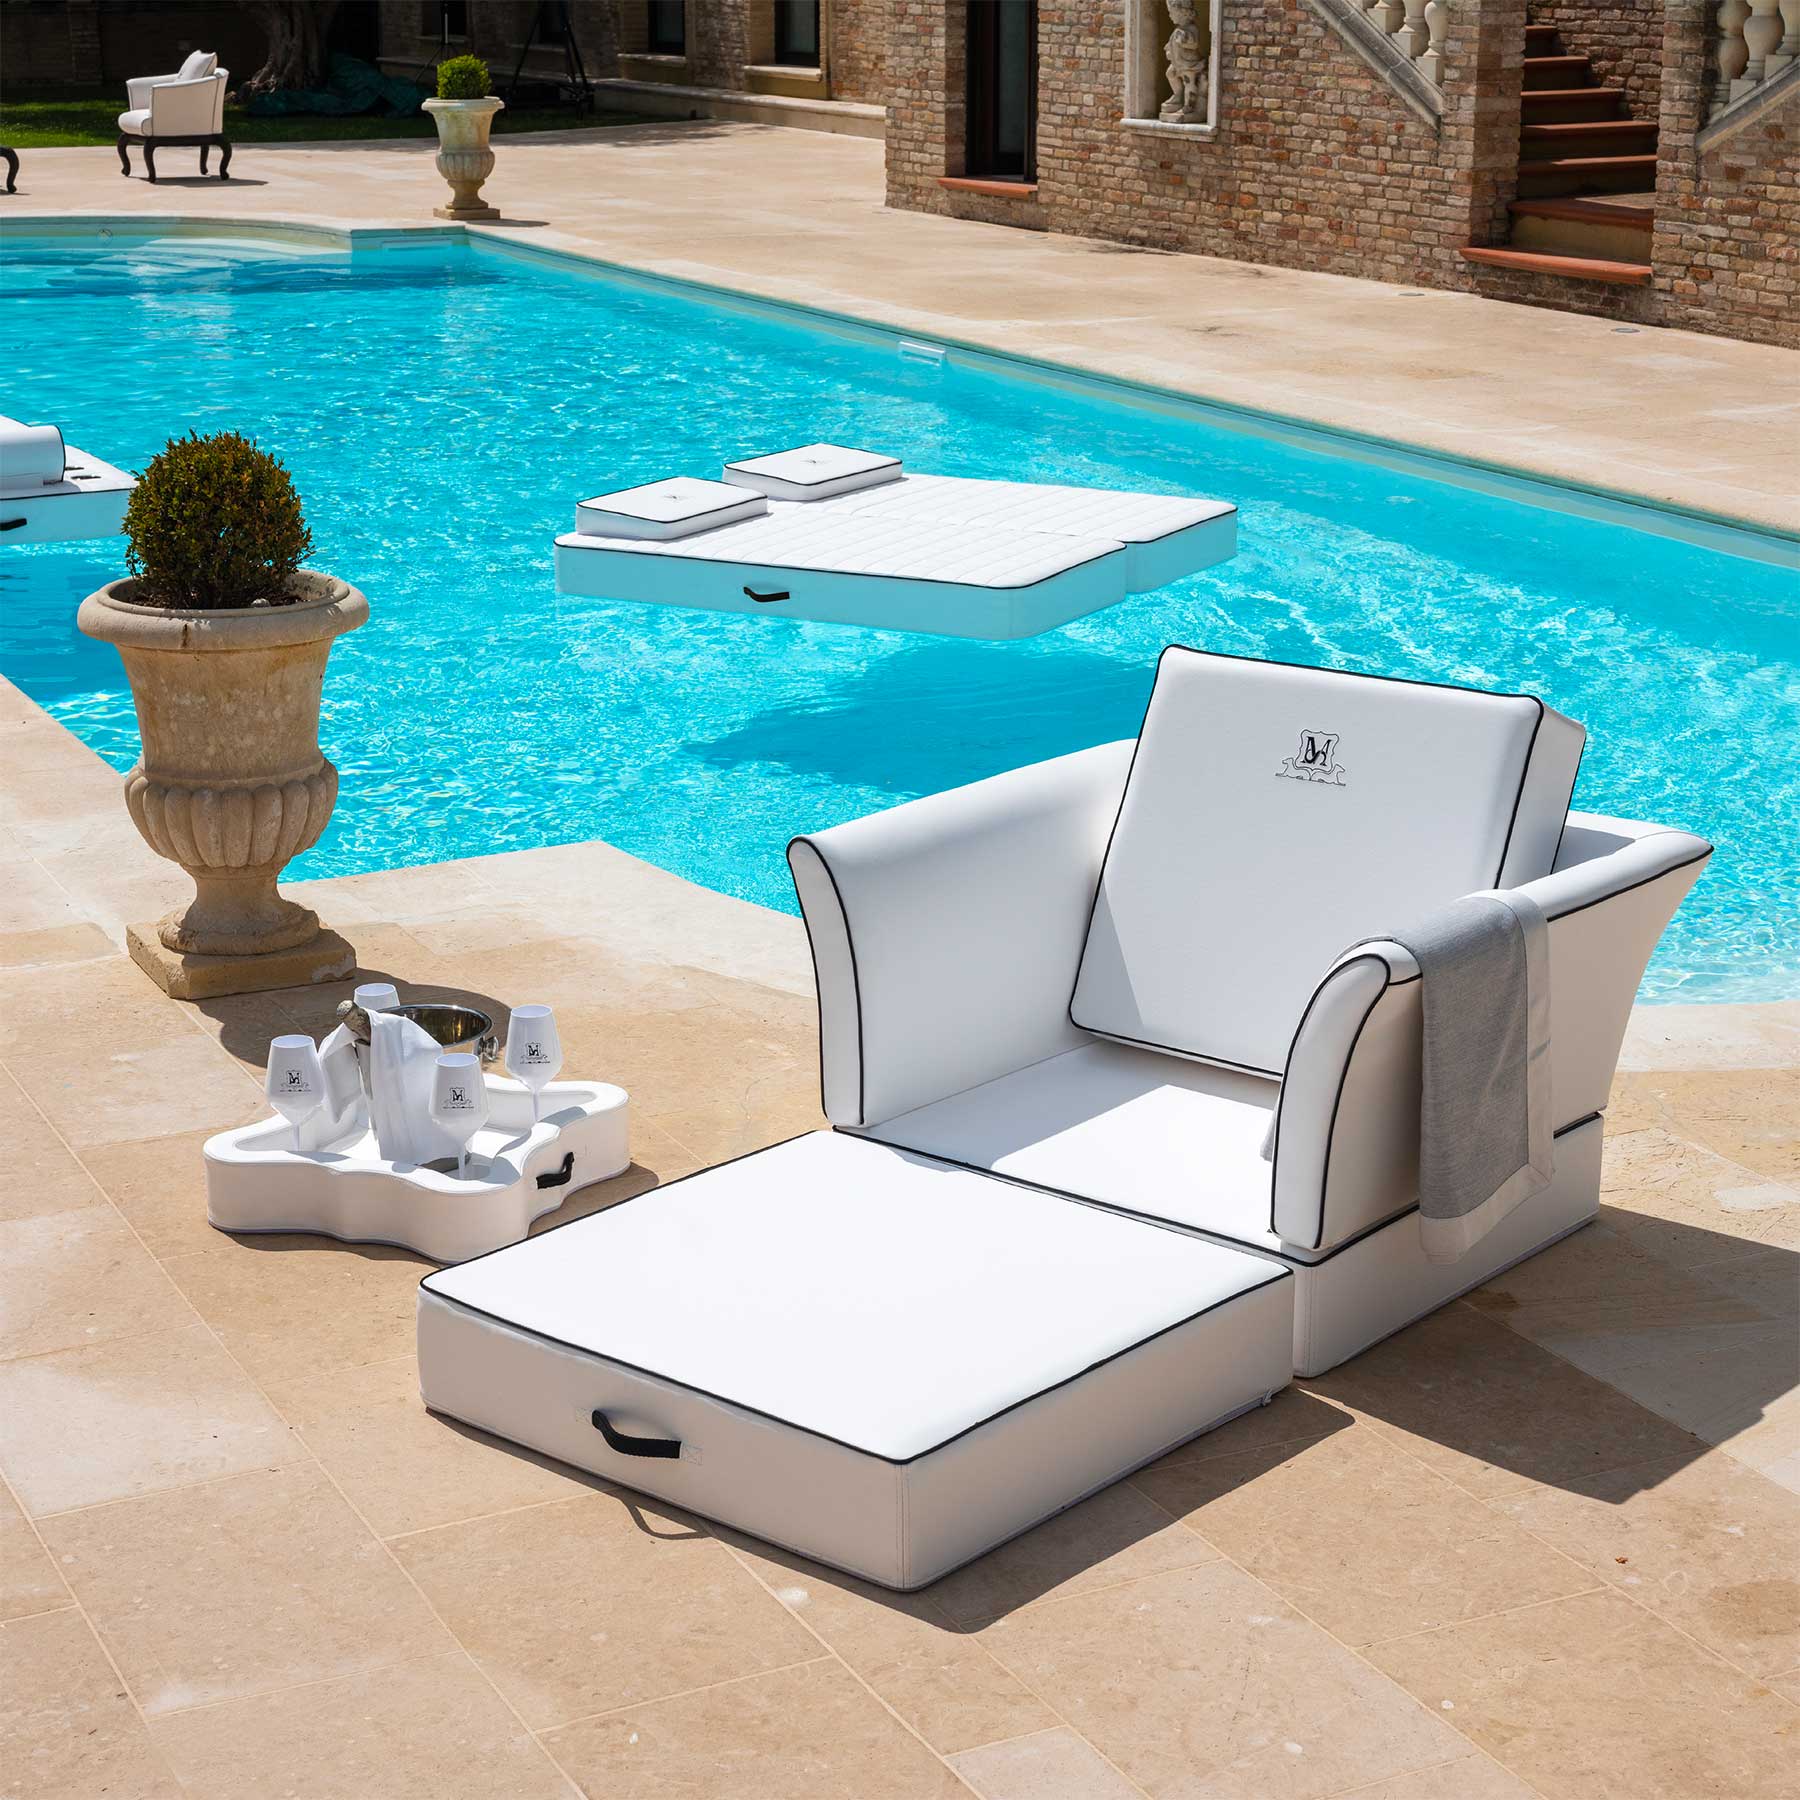 Profitez au maximum de votre piscine avec un fauteuil flottant blanc d'exception. Meubles de jardin de haute qualité en vente en ligne livrés à domicile.